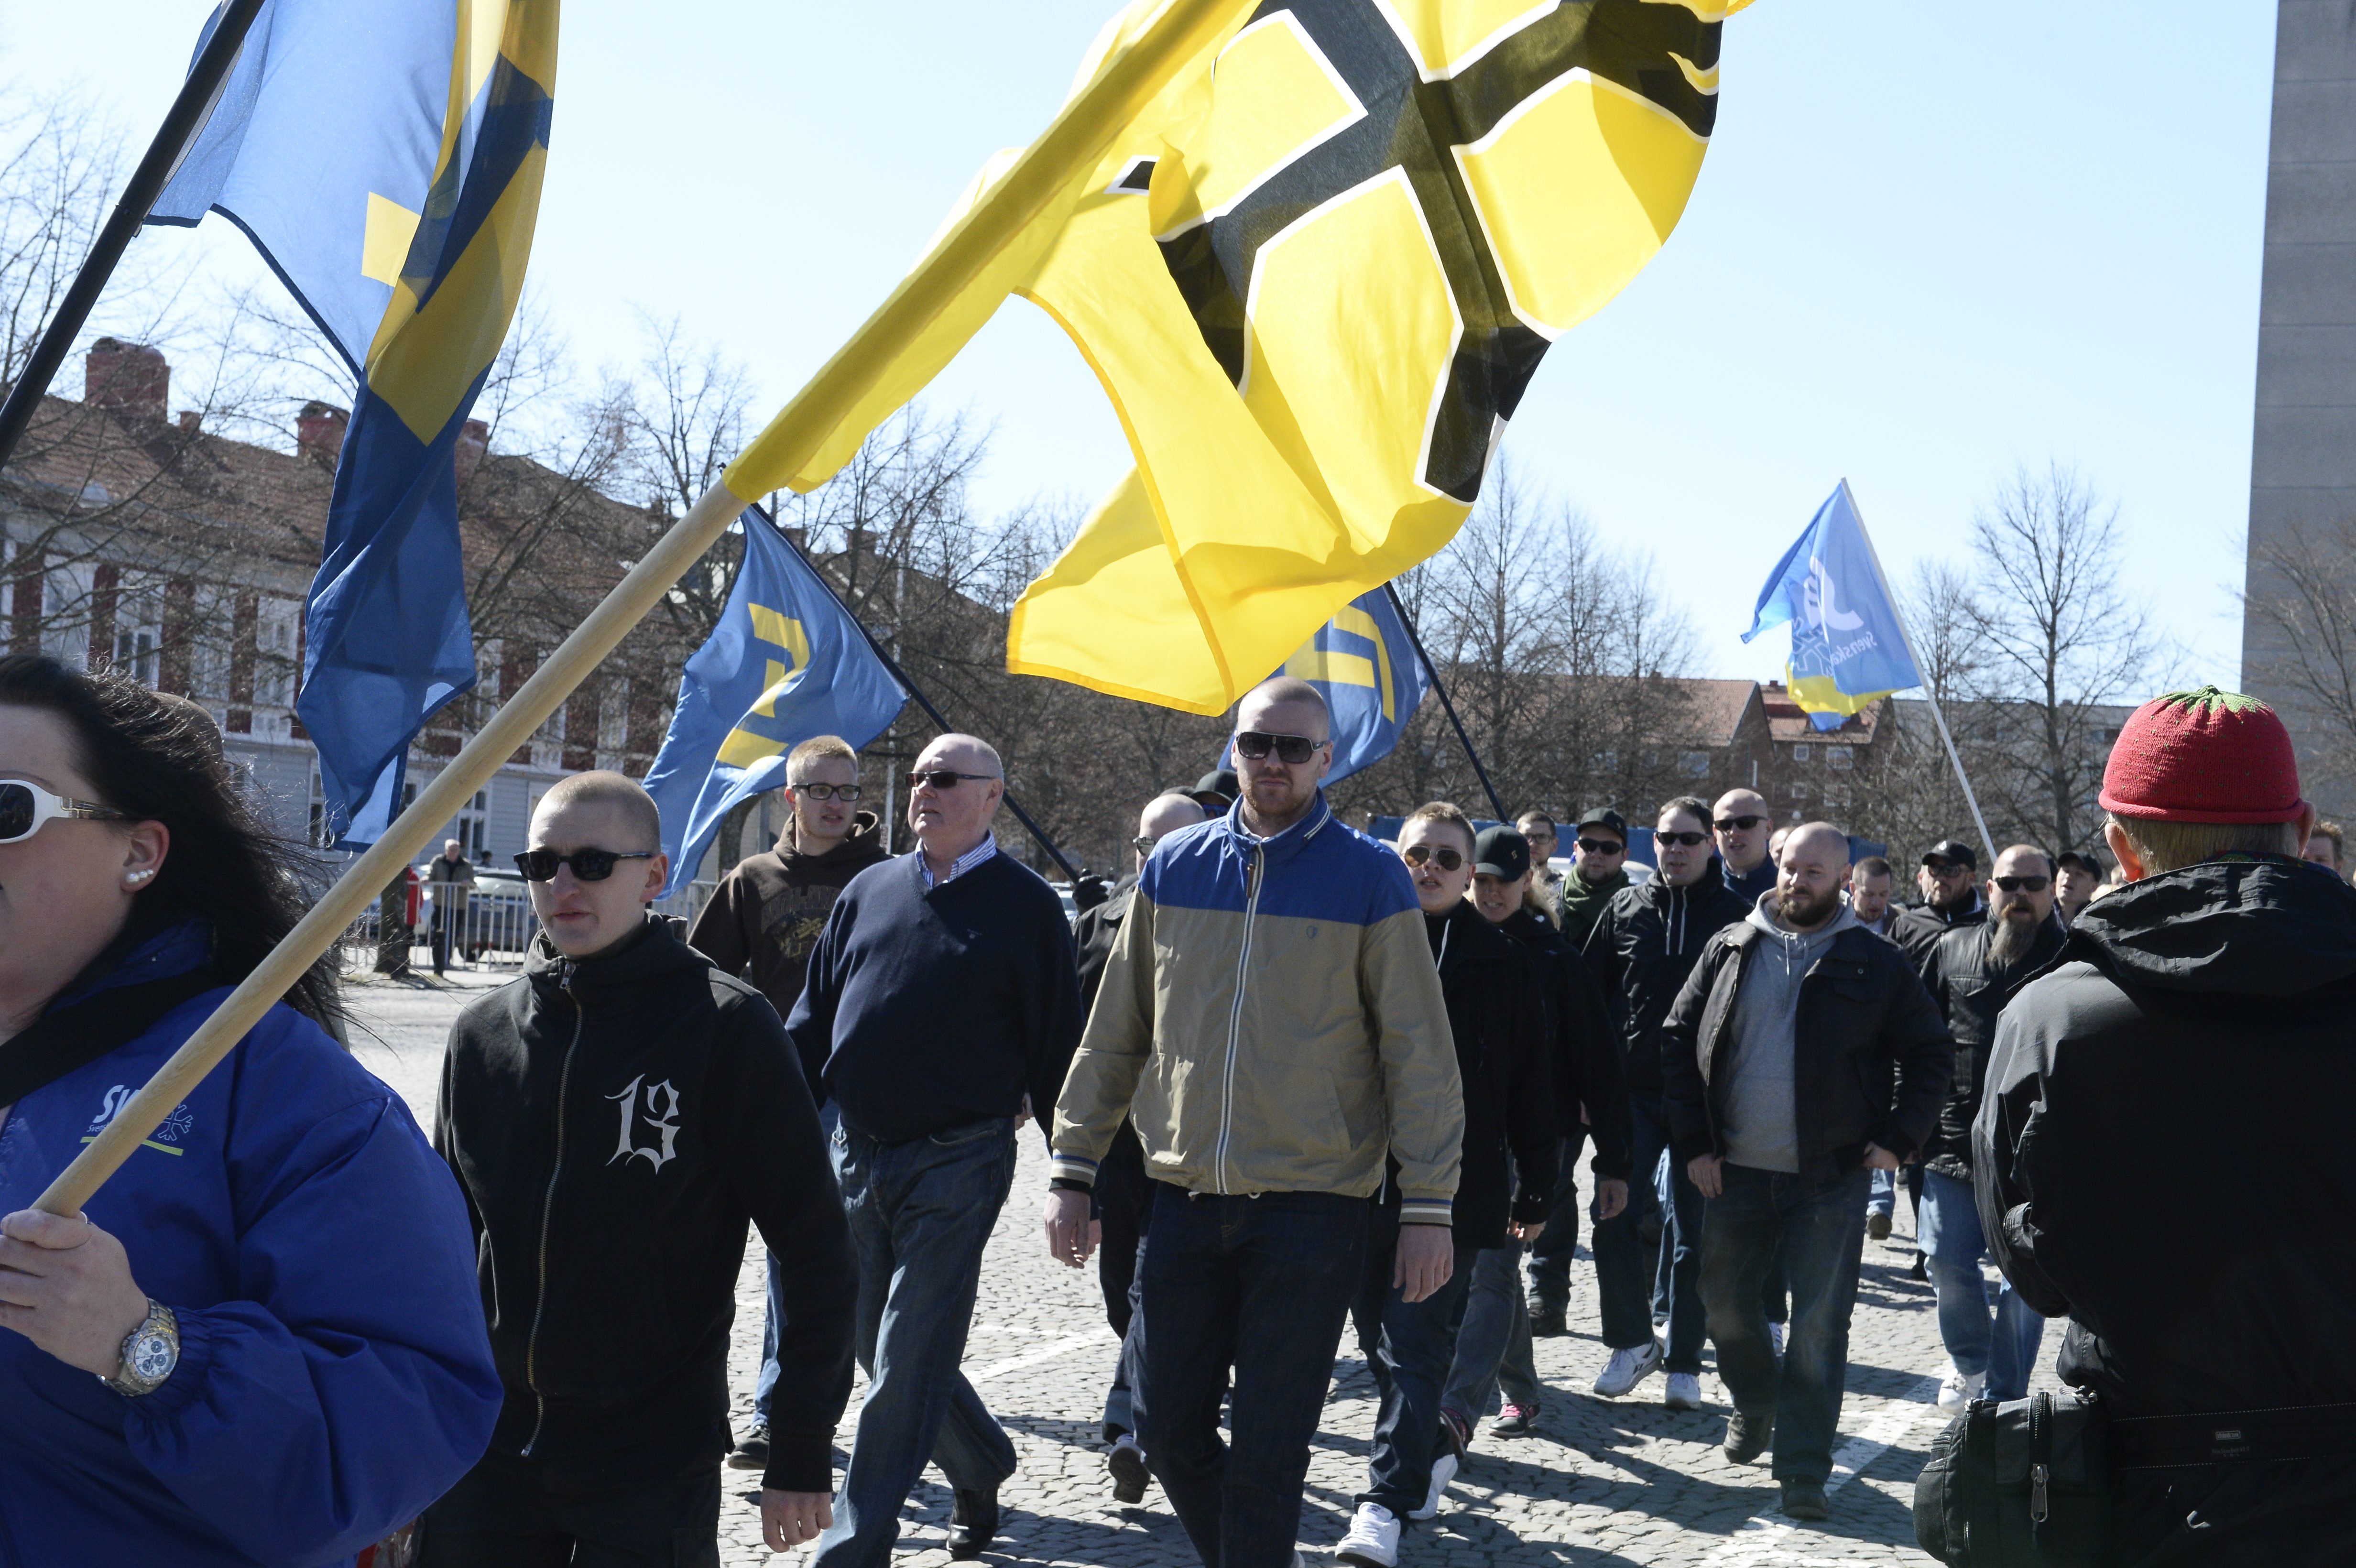 Enligt uppgift hade Svenskarnas parti samlat omkring 200 demonstranter. 